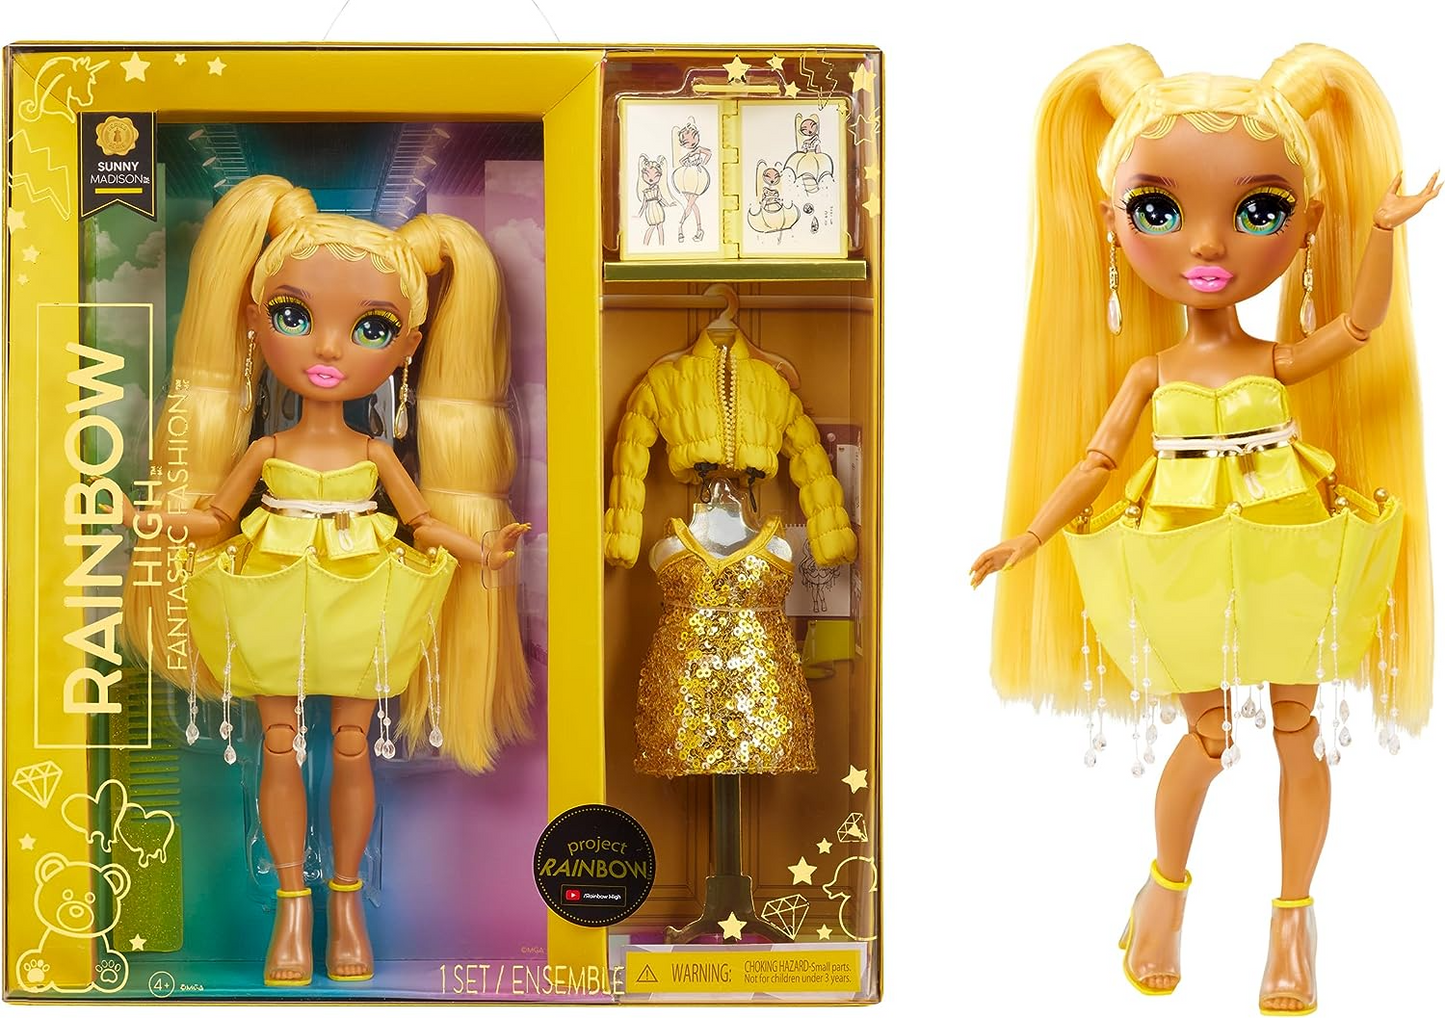 Rainbow High Fantástica boneca fashion - SUNNY MADISON - Boneca fashion amarela de 11" e conjunto de brinquedos com 2 roupas e acessórios de moda - Ótimo para crianças de 4 a 12 anos